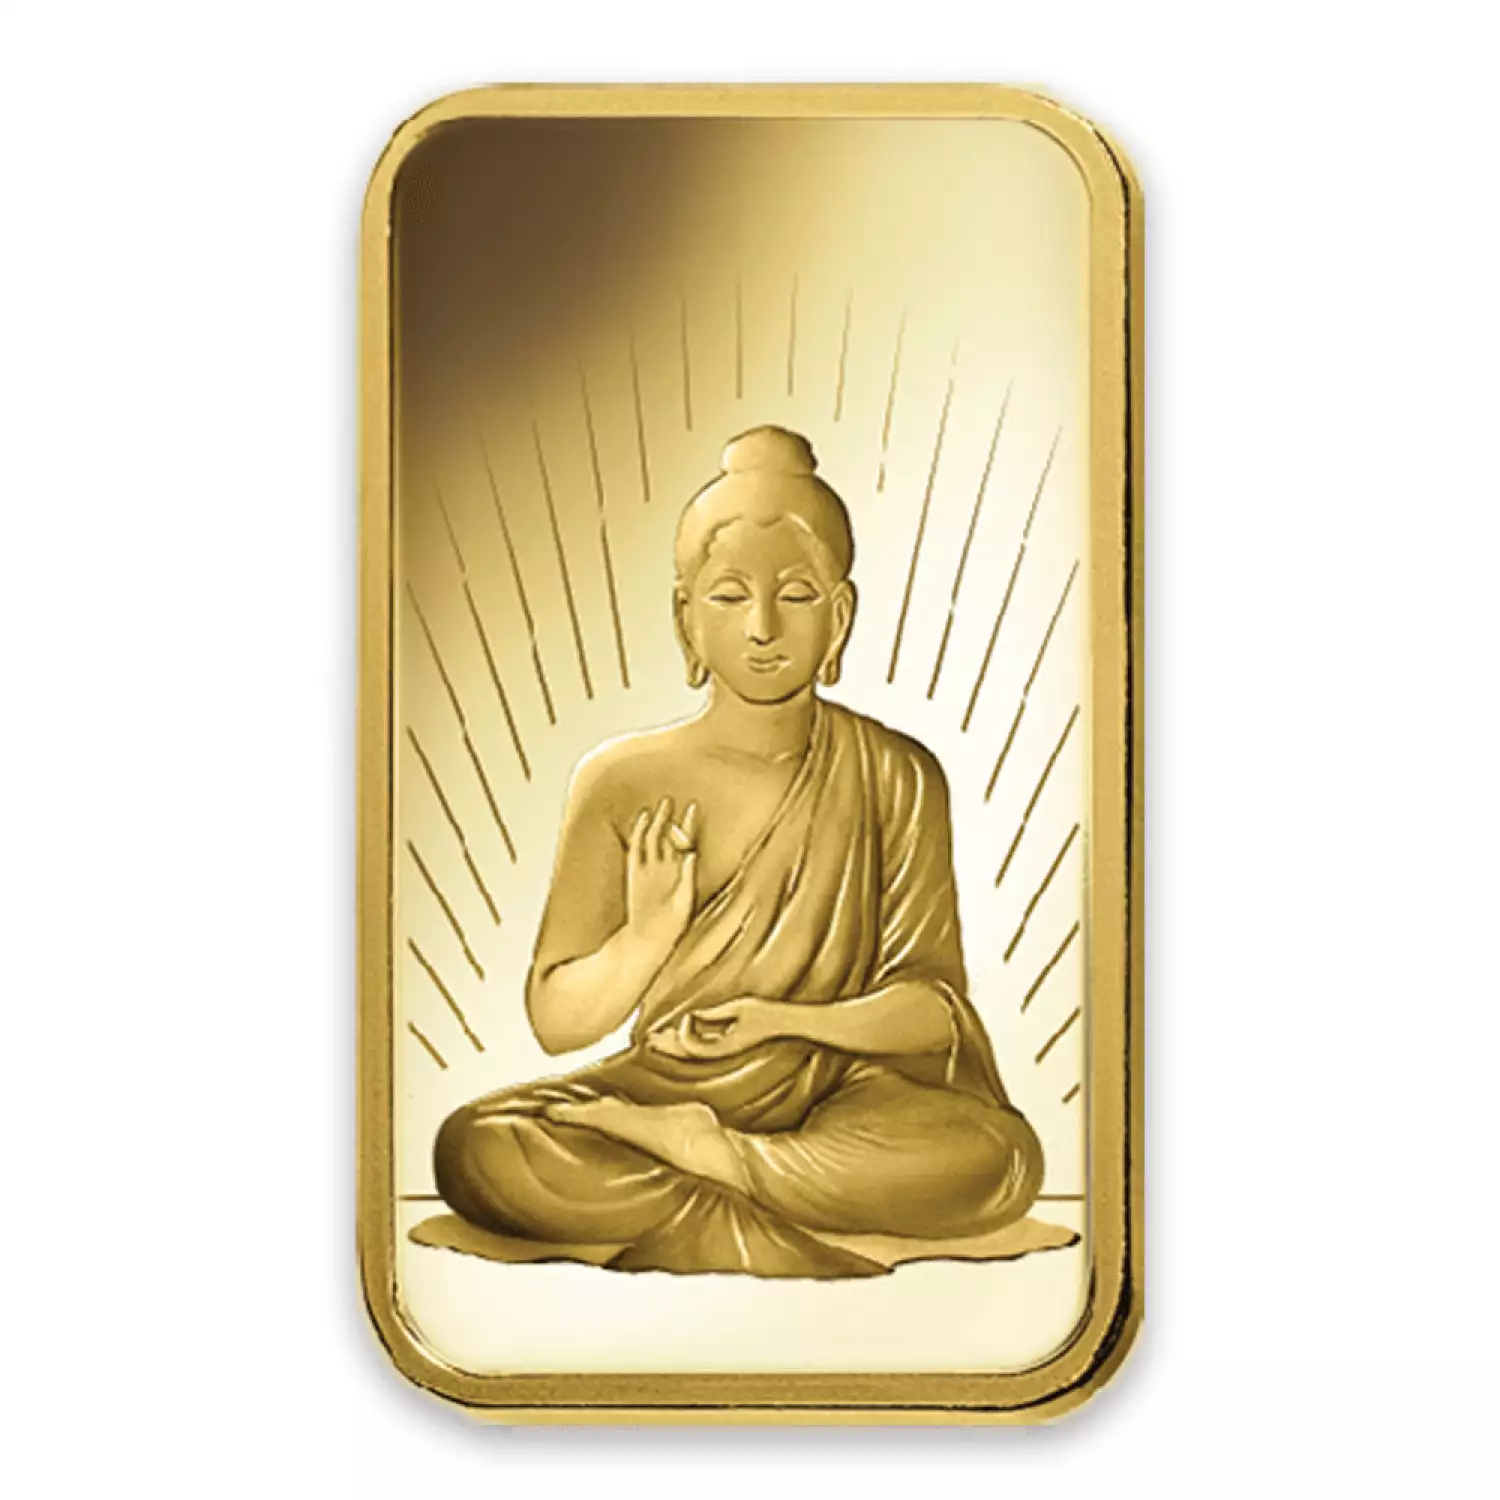 10g PAMP Gold Bar - Buddha